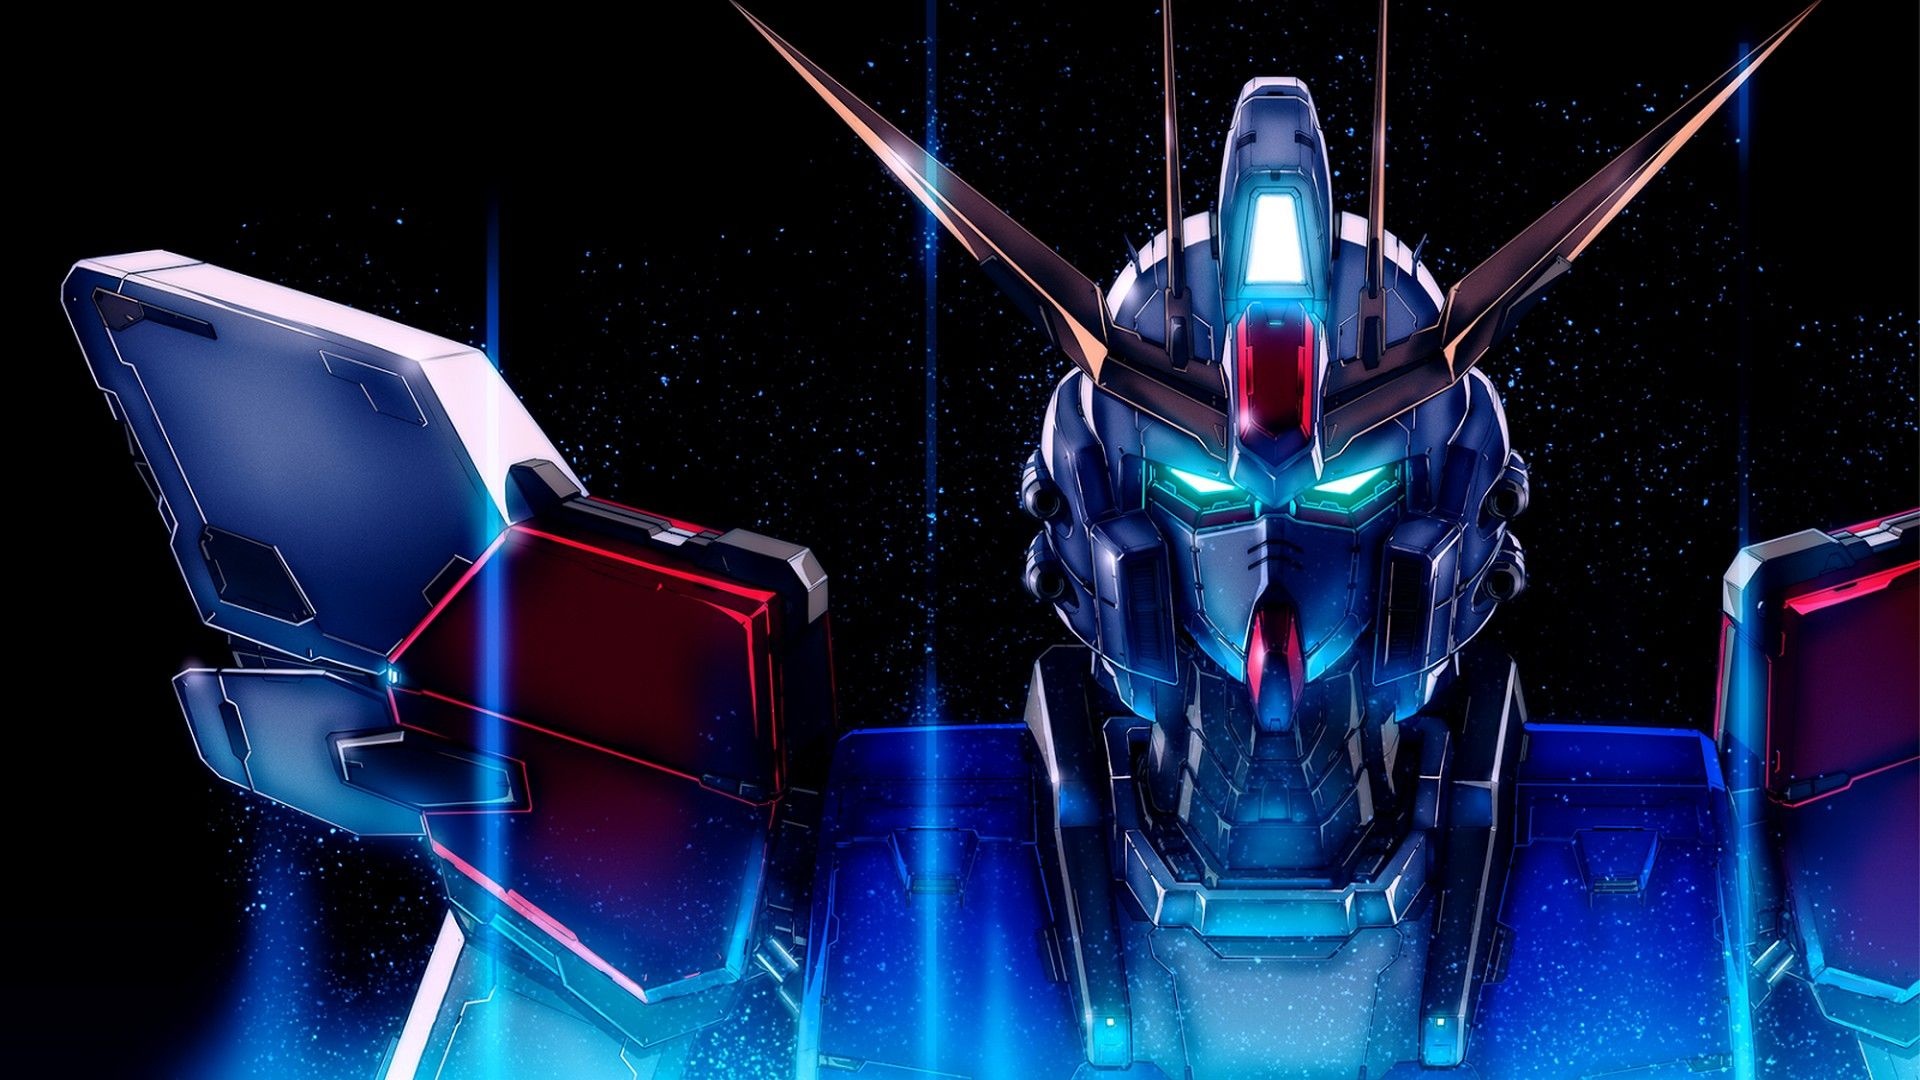 Gundam, Mecha warriors, Epic battles, Futuristic technology, 1920x1080 Full HD Desktop